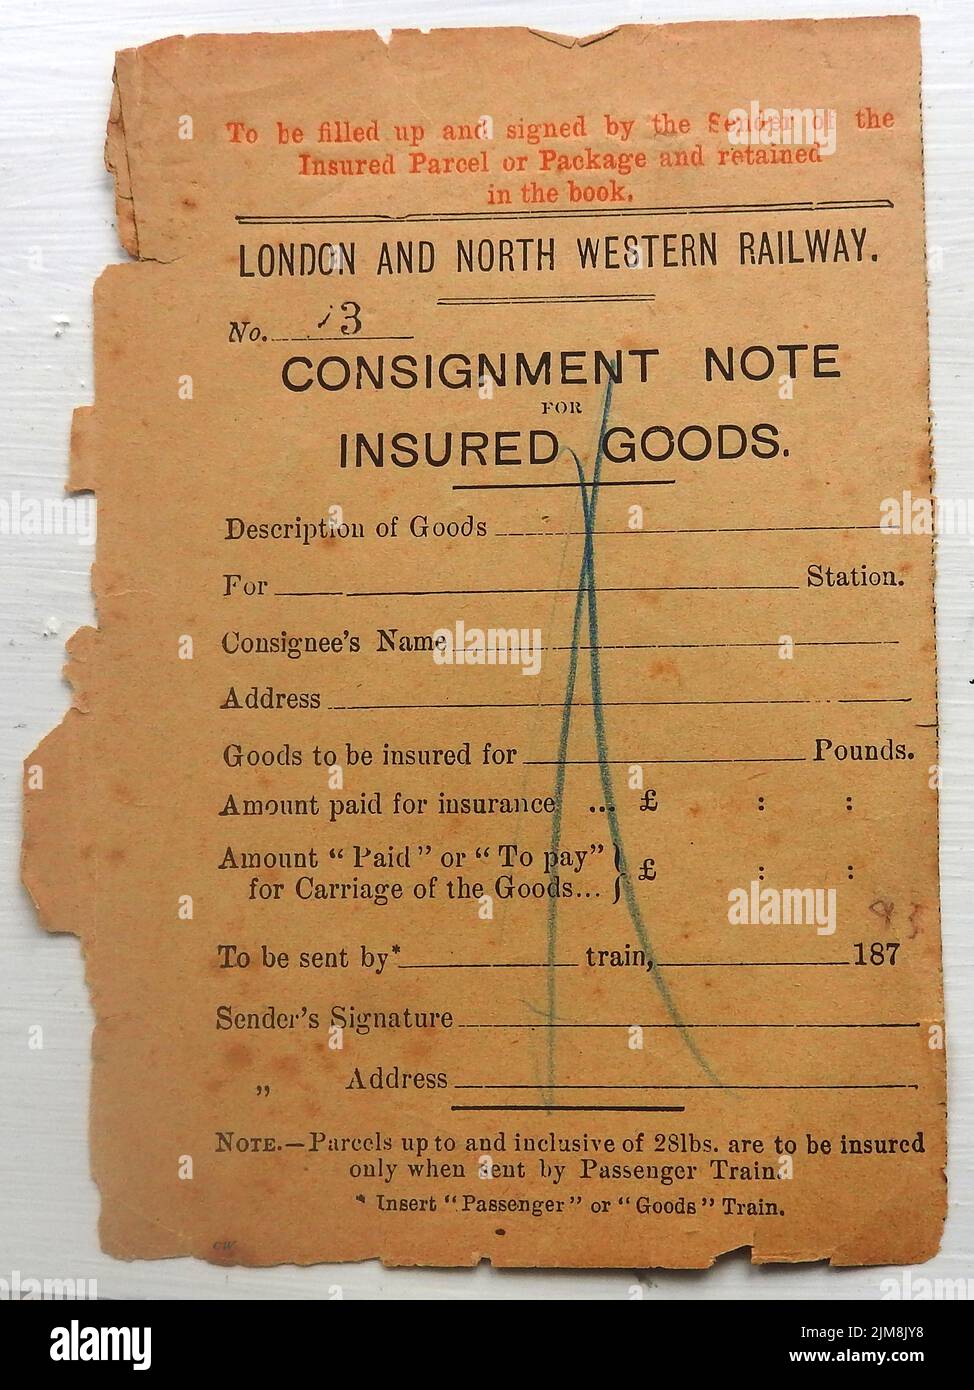 Una nota de envío para mercancías aseguradas de Londres y North Western Railways 1893. Foto de stock